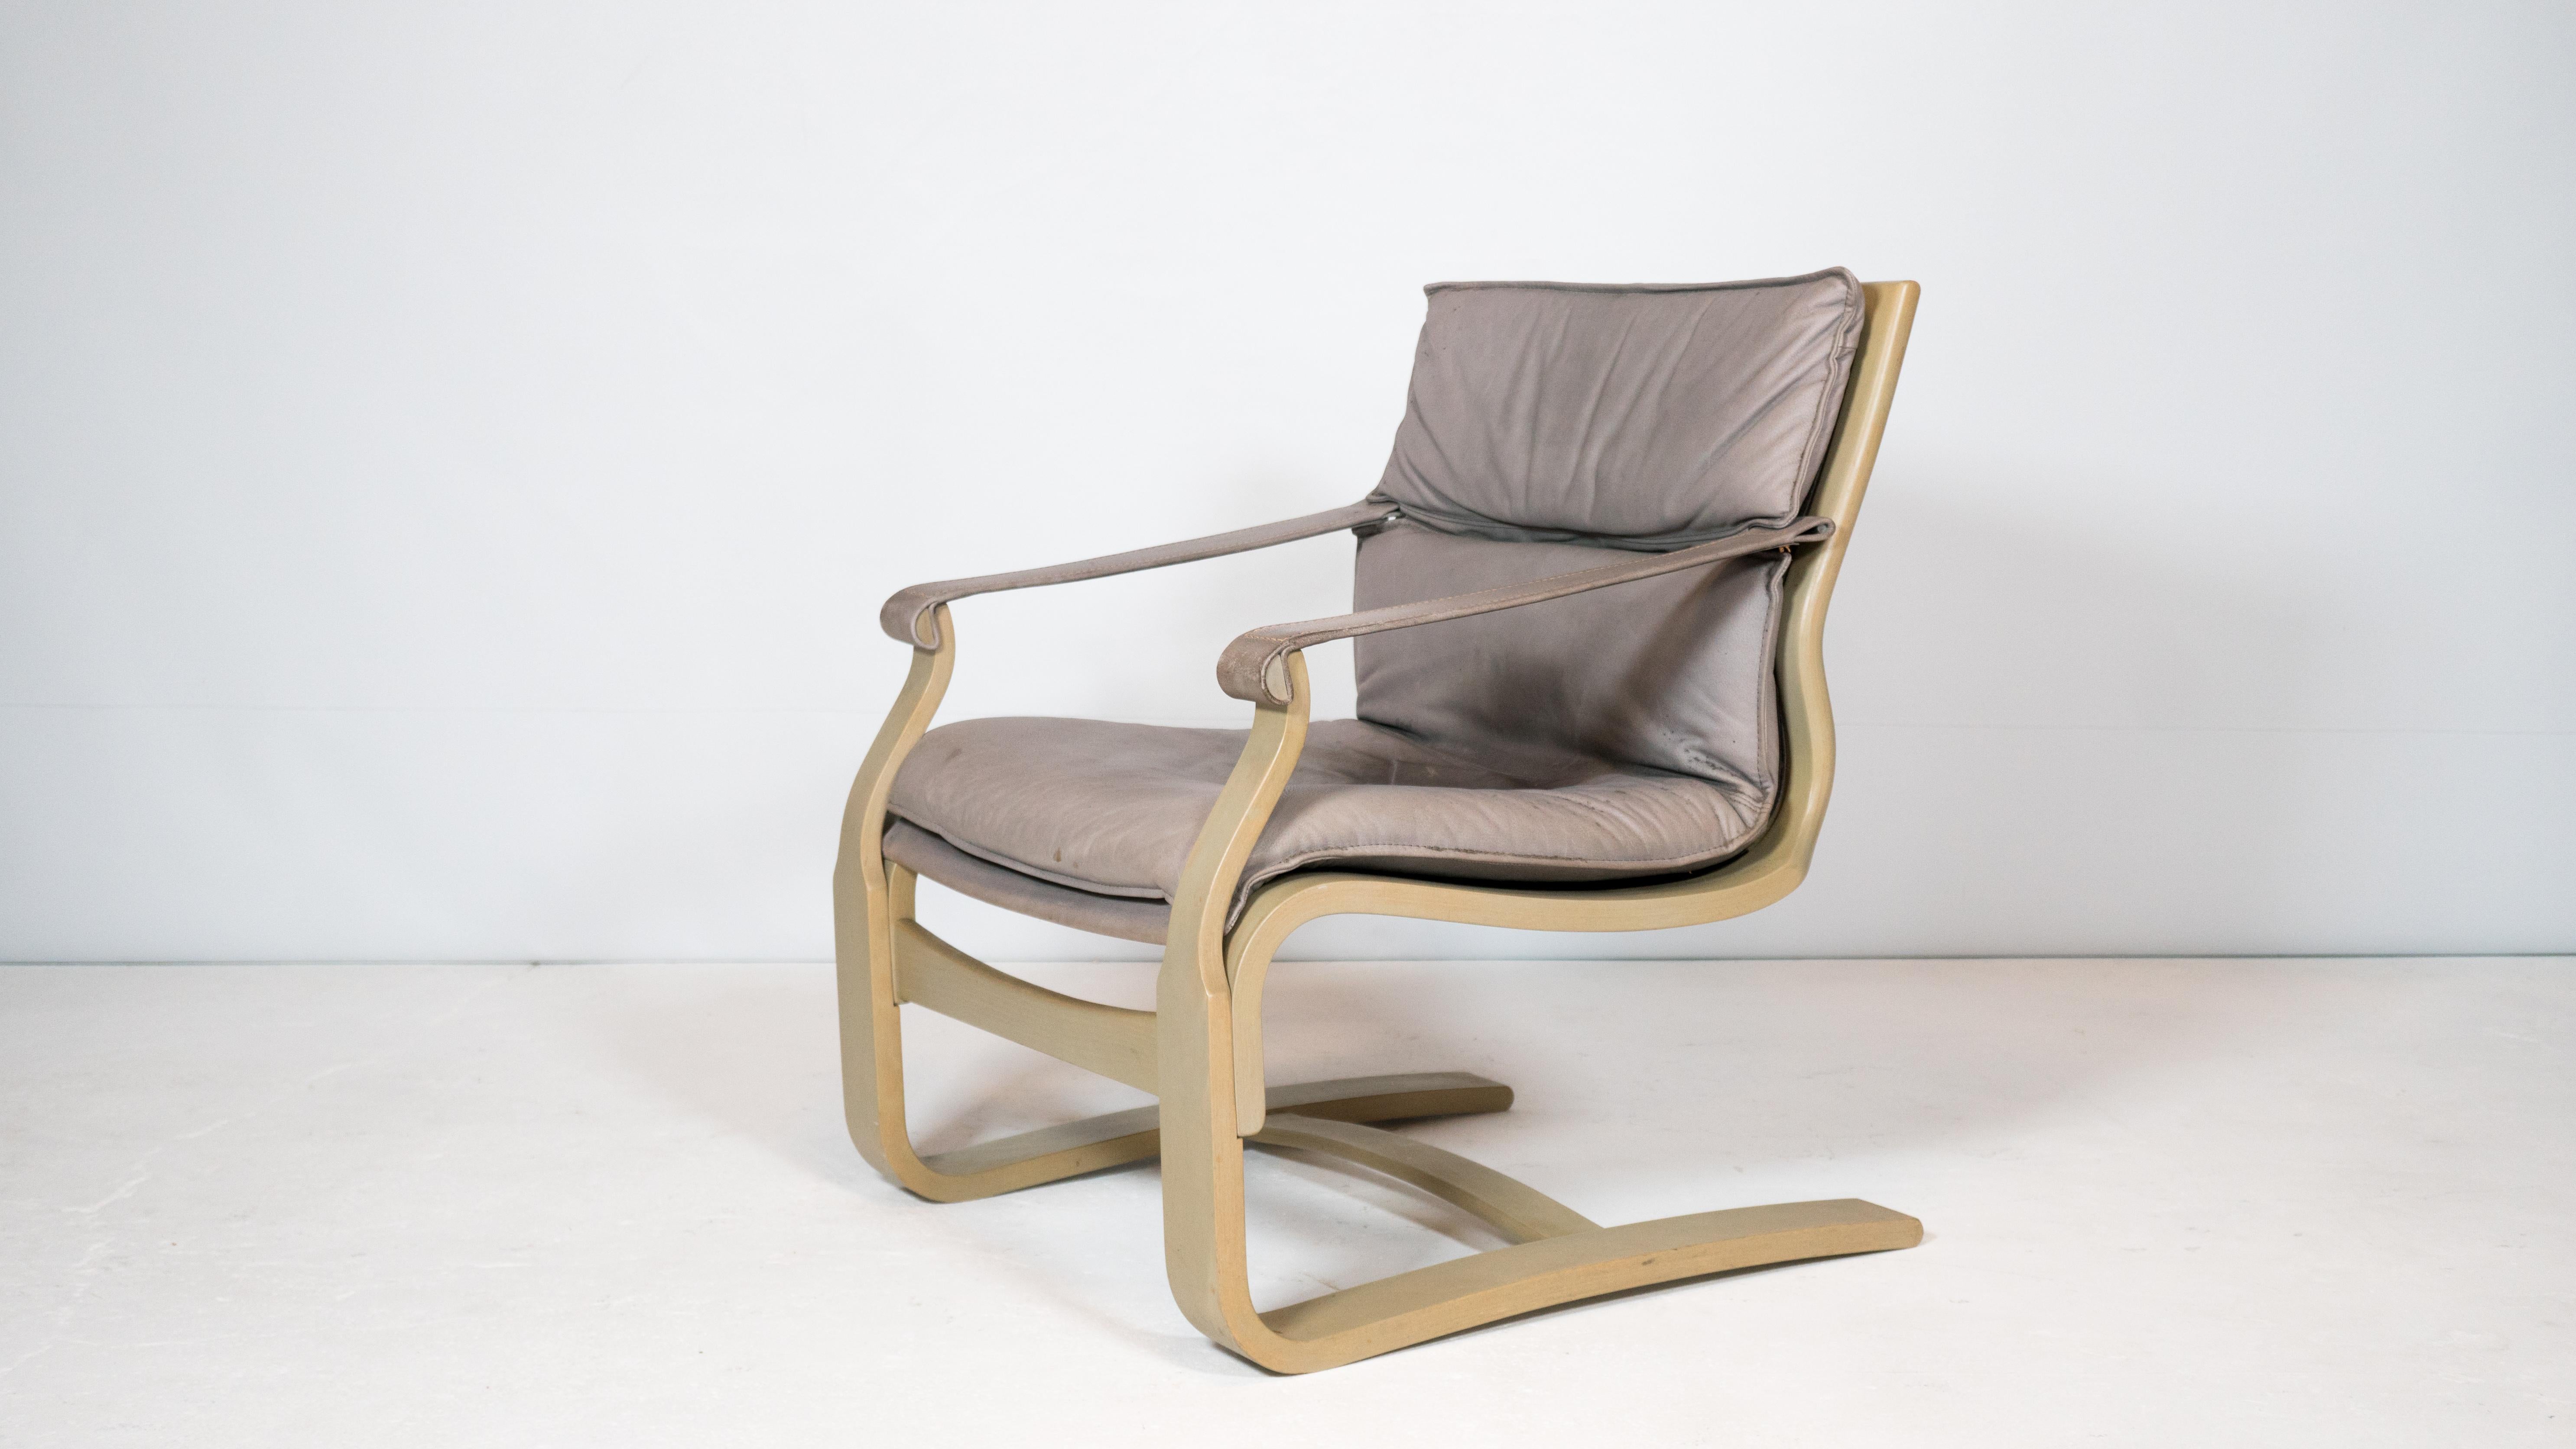 Chaise longue Ake Fribytter pour Nelo Möbel en Suède, vers les années 1970. Le cadre en bois courbé sculpté offre une certaine flexibilité, créant un rebond agréable lorsque l'on s'assoit. Coussin (amovible) et accoudoirs en cuir rembourré gris. Bon